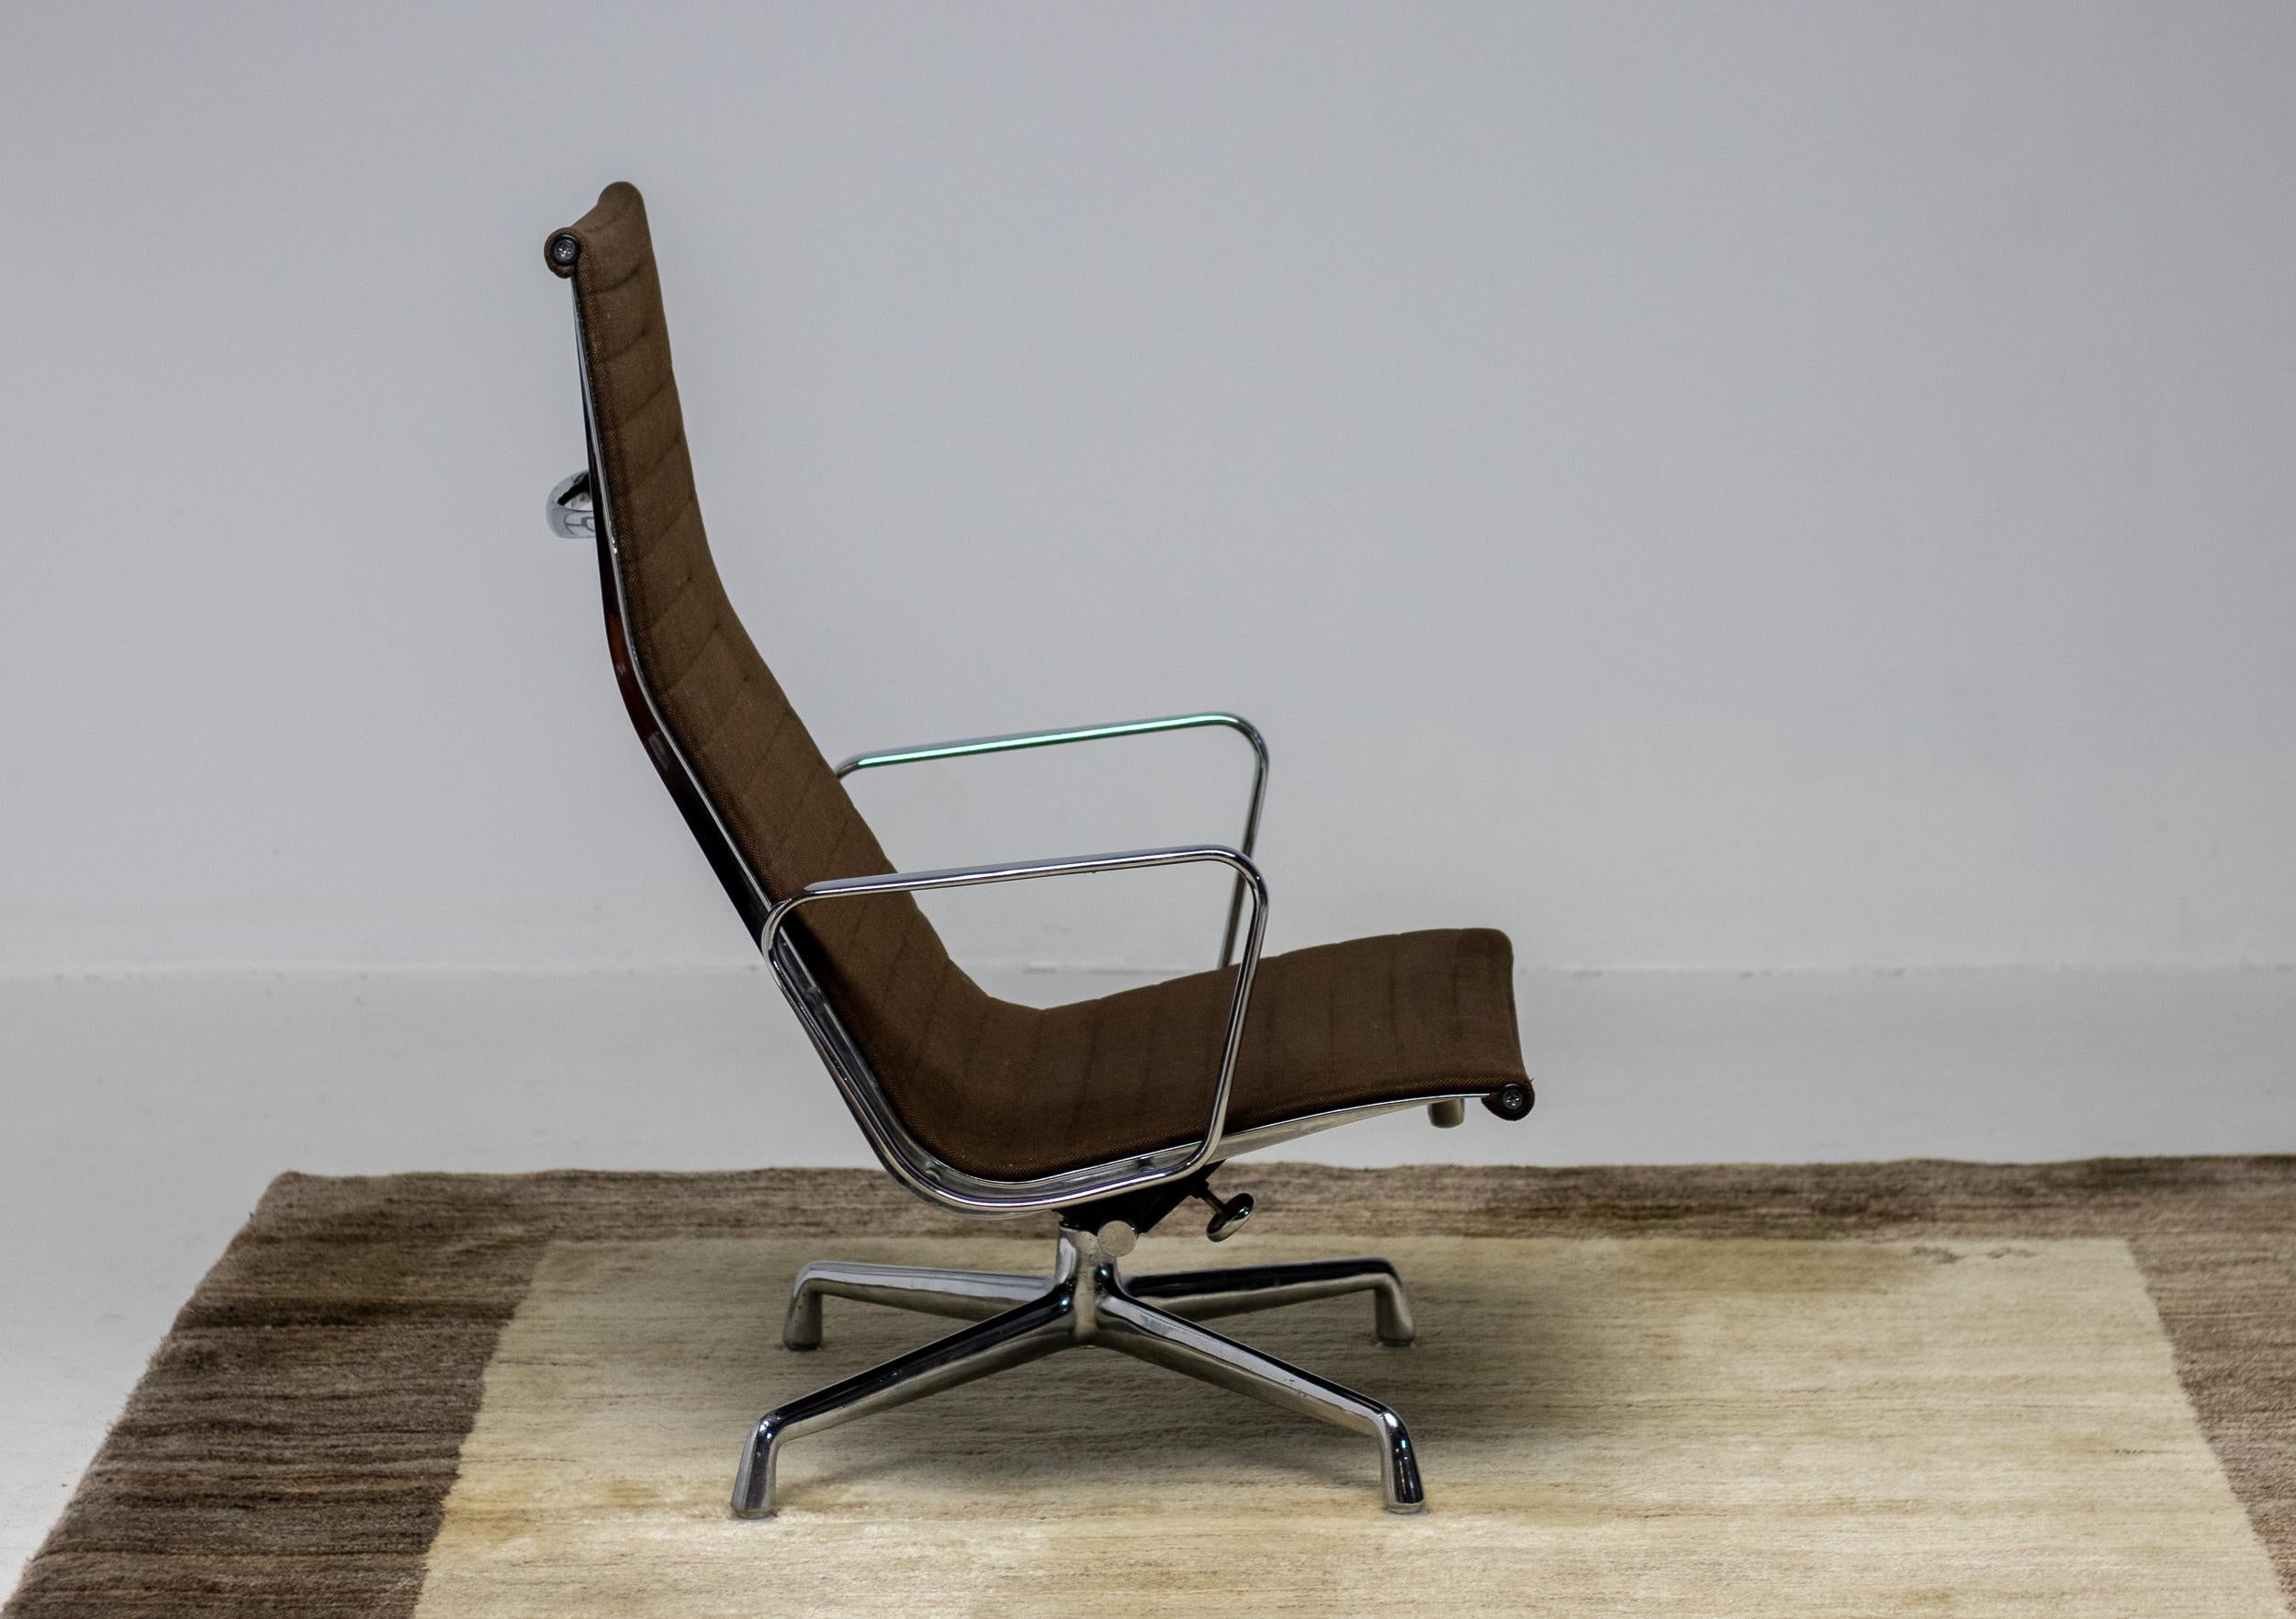 Chaise longue Eames en aluminium EA 124 en tissu Hopsak bicolore marron foncé, fabriquée par Herman Miller. La chaise est réalisée en aluminium chromé, elle est pivotante et dispose d'un mécanisme d'inclinaison réglable. 
Désirable version